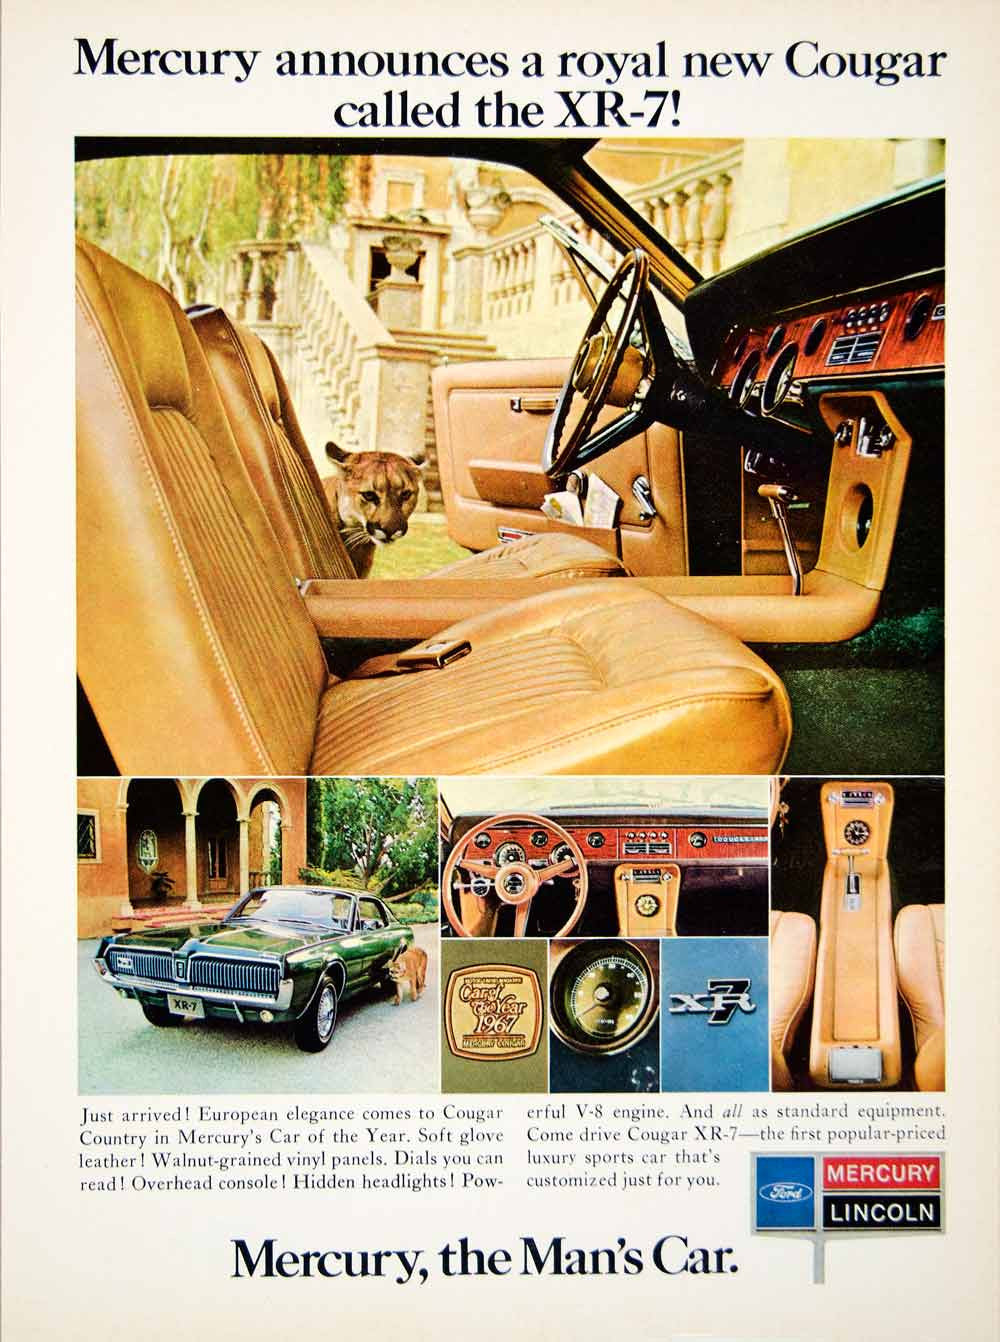 1967 Ad Ford Lincoln Mercury Cougar XR-7 Luxury Sports Car 2 Door Fastback YCD5